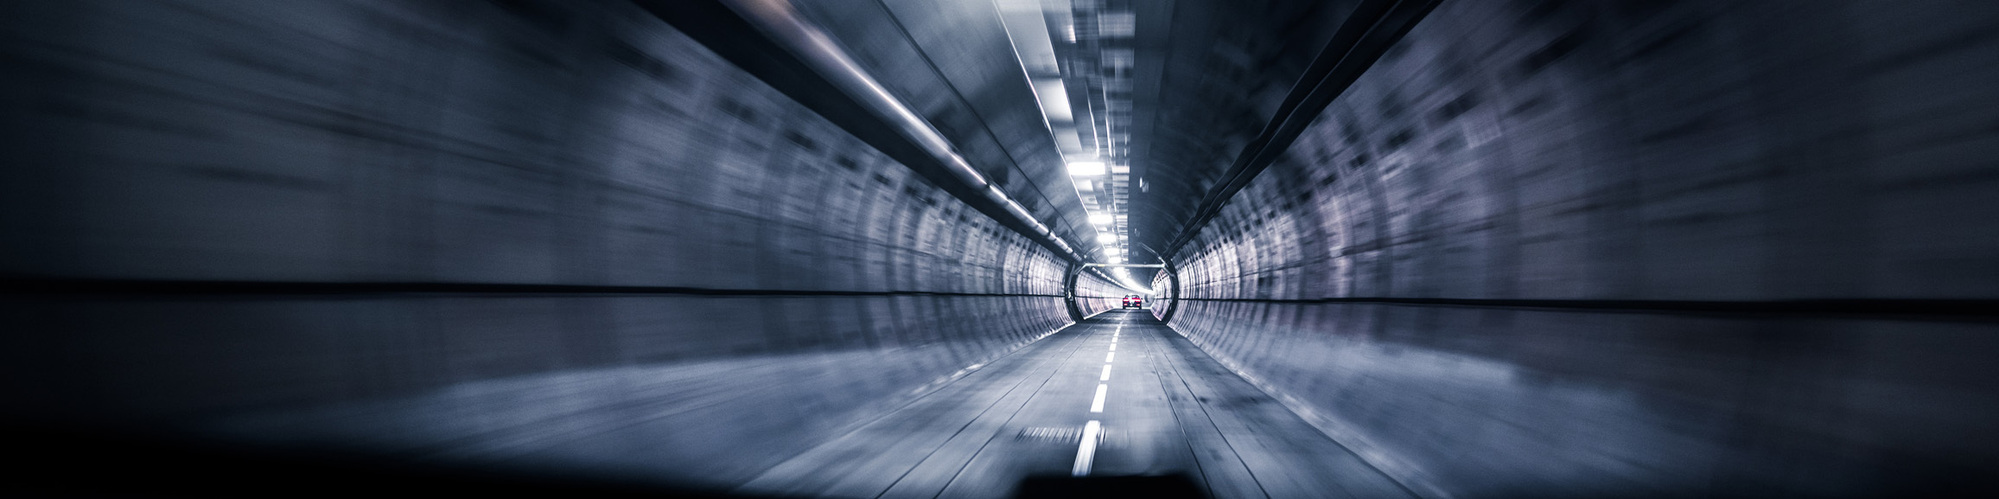 photographe corporate audi event reportage lors du passage dans le tunnel sous la Manche